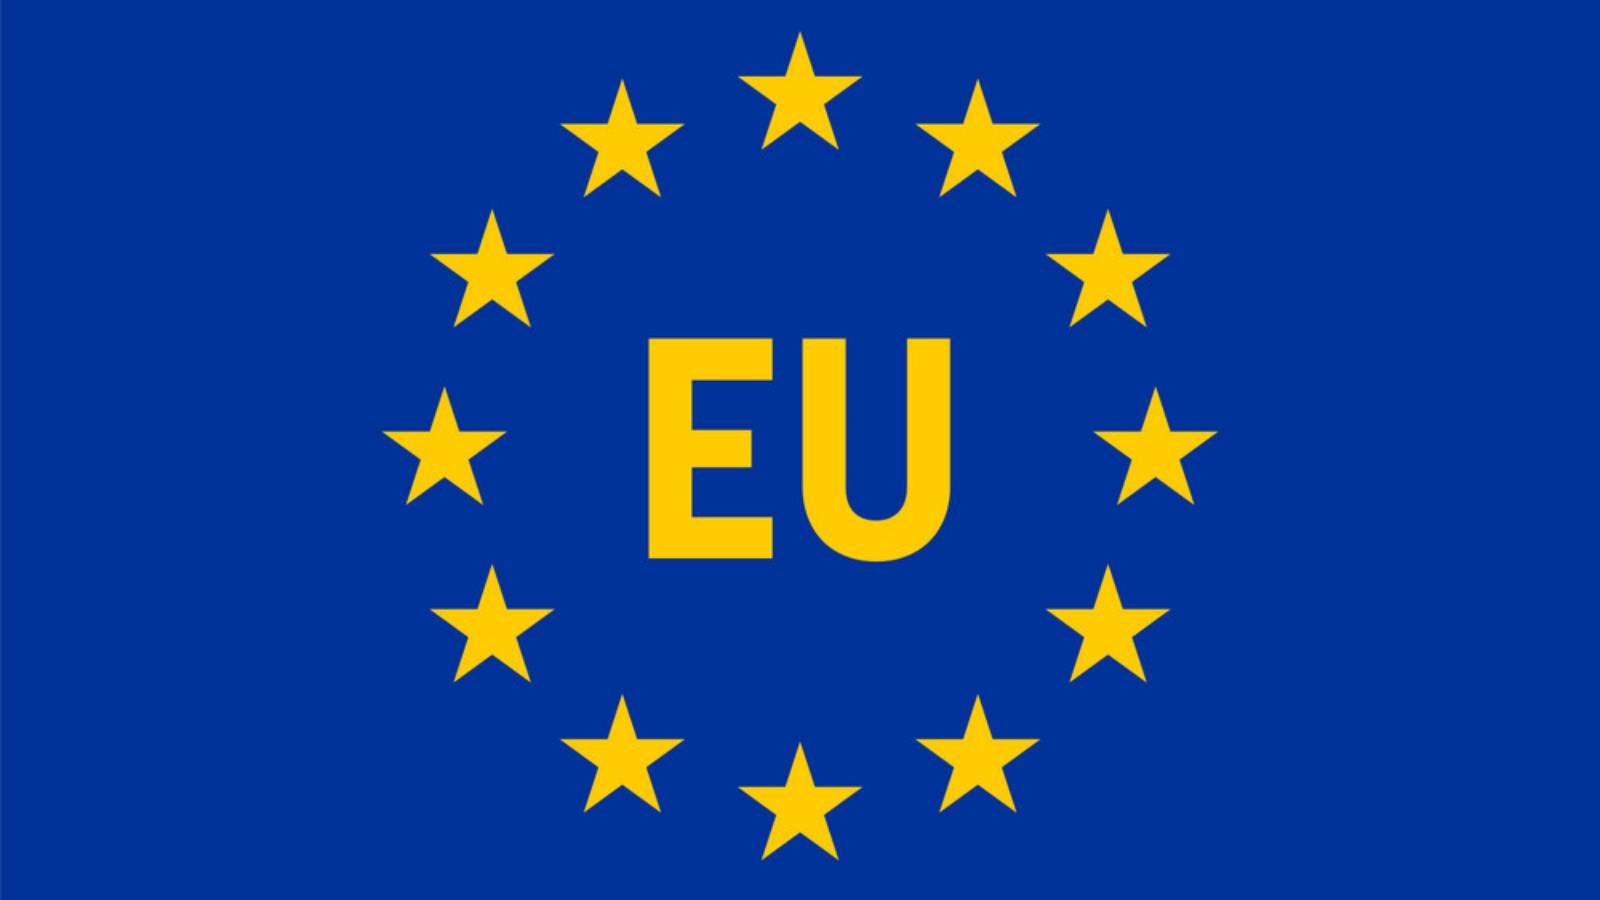 Charger-revolutionen begyndte i EU i 2022